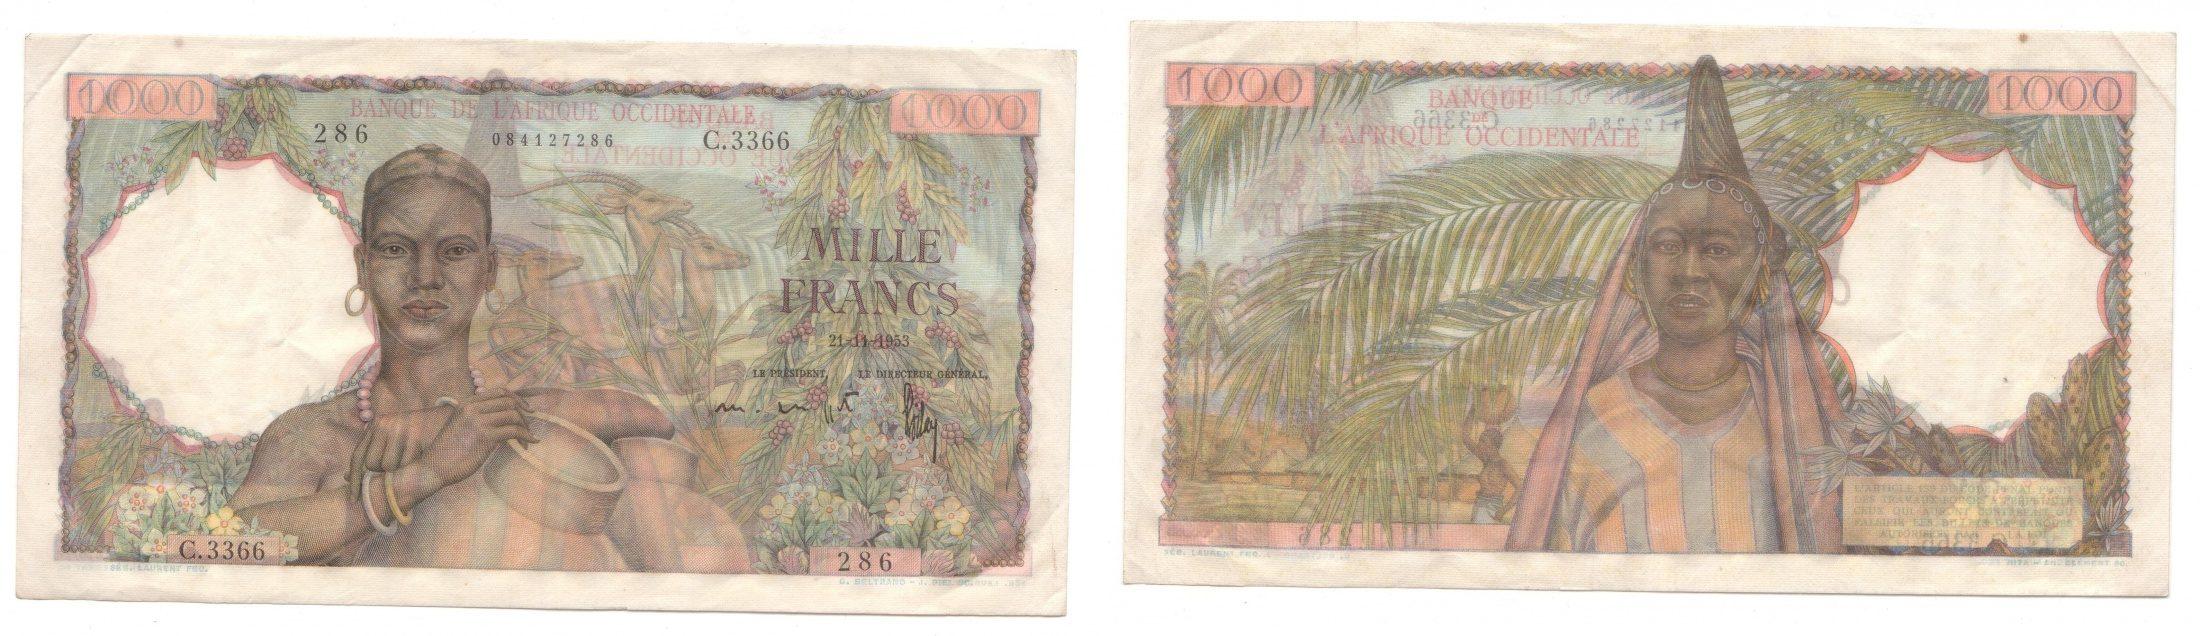 Foto Afrique Occidentale Française 1 000 Francs 22/11/1953